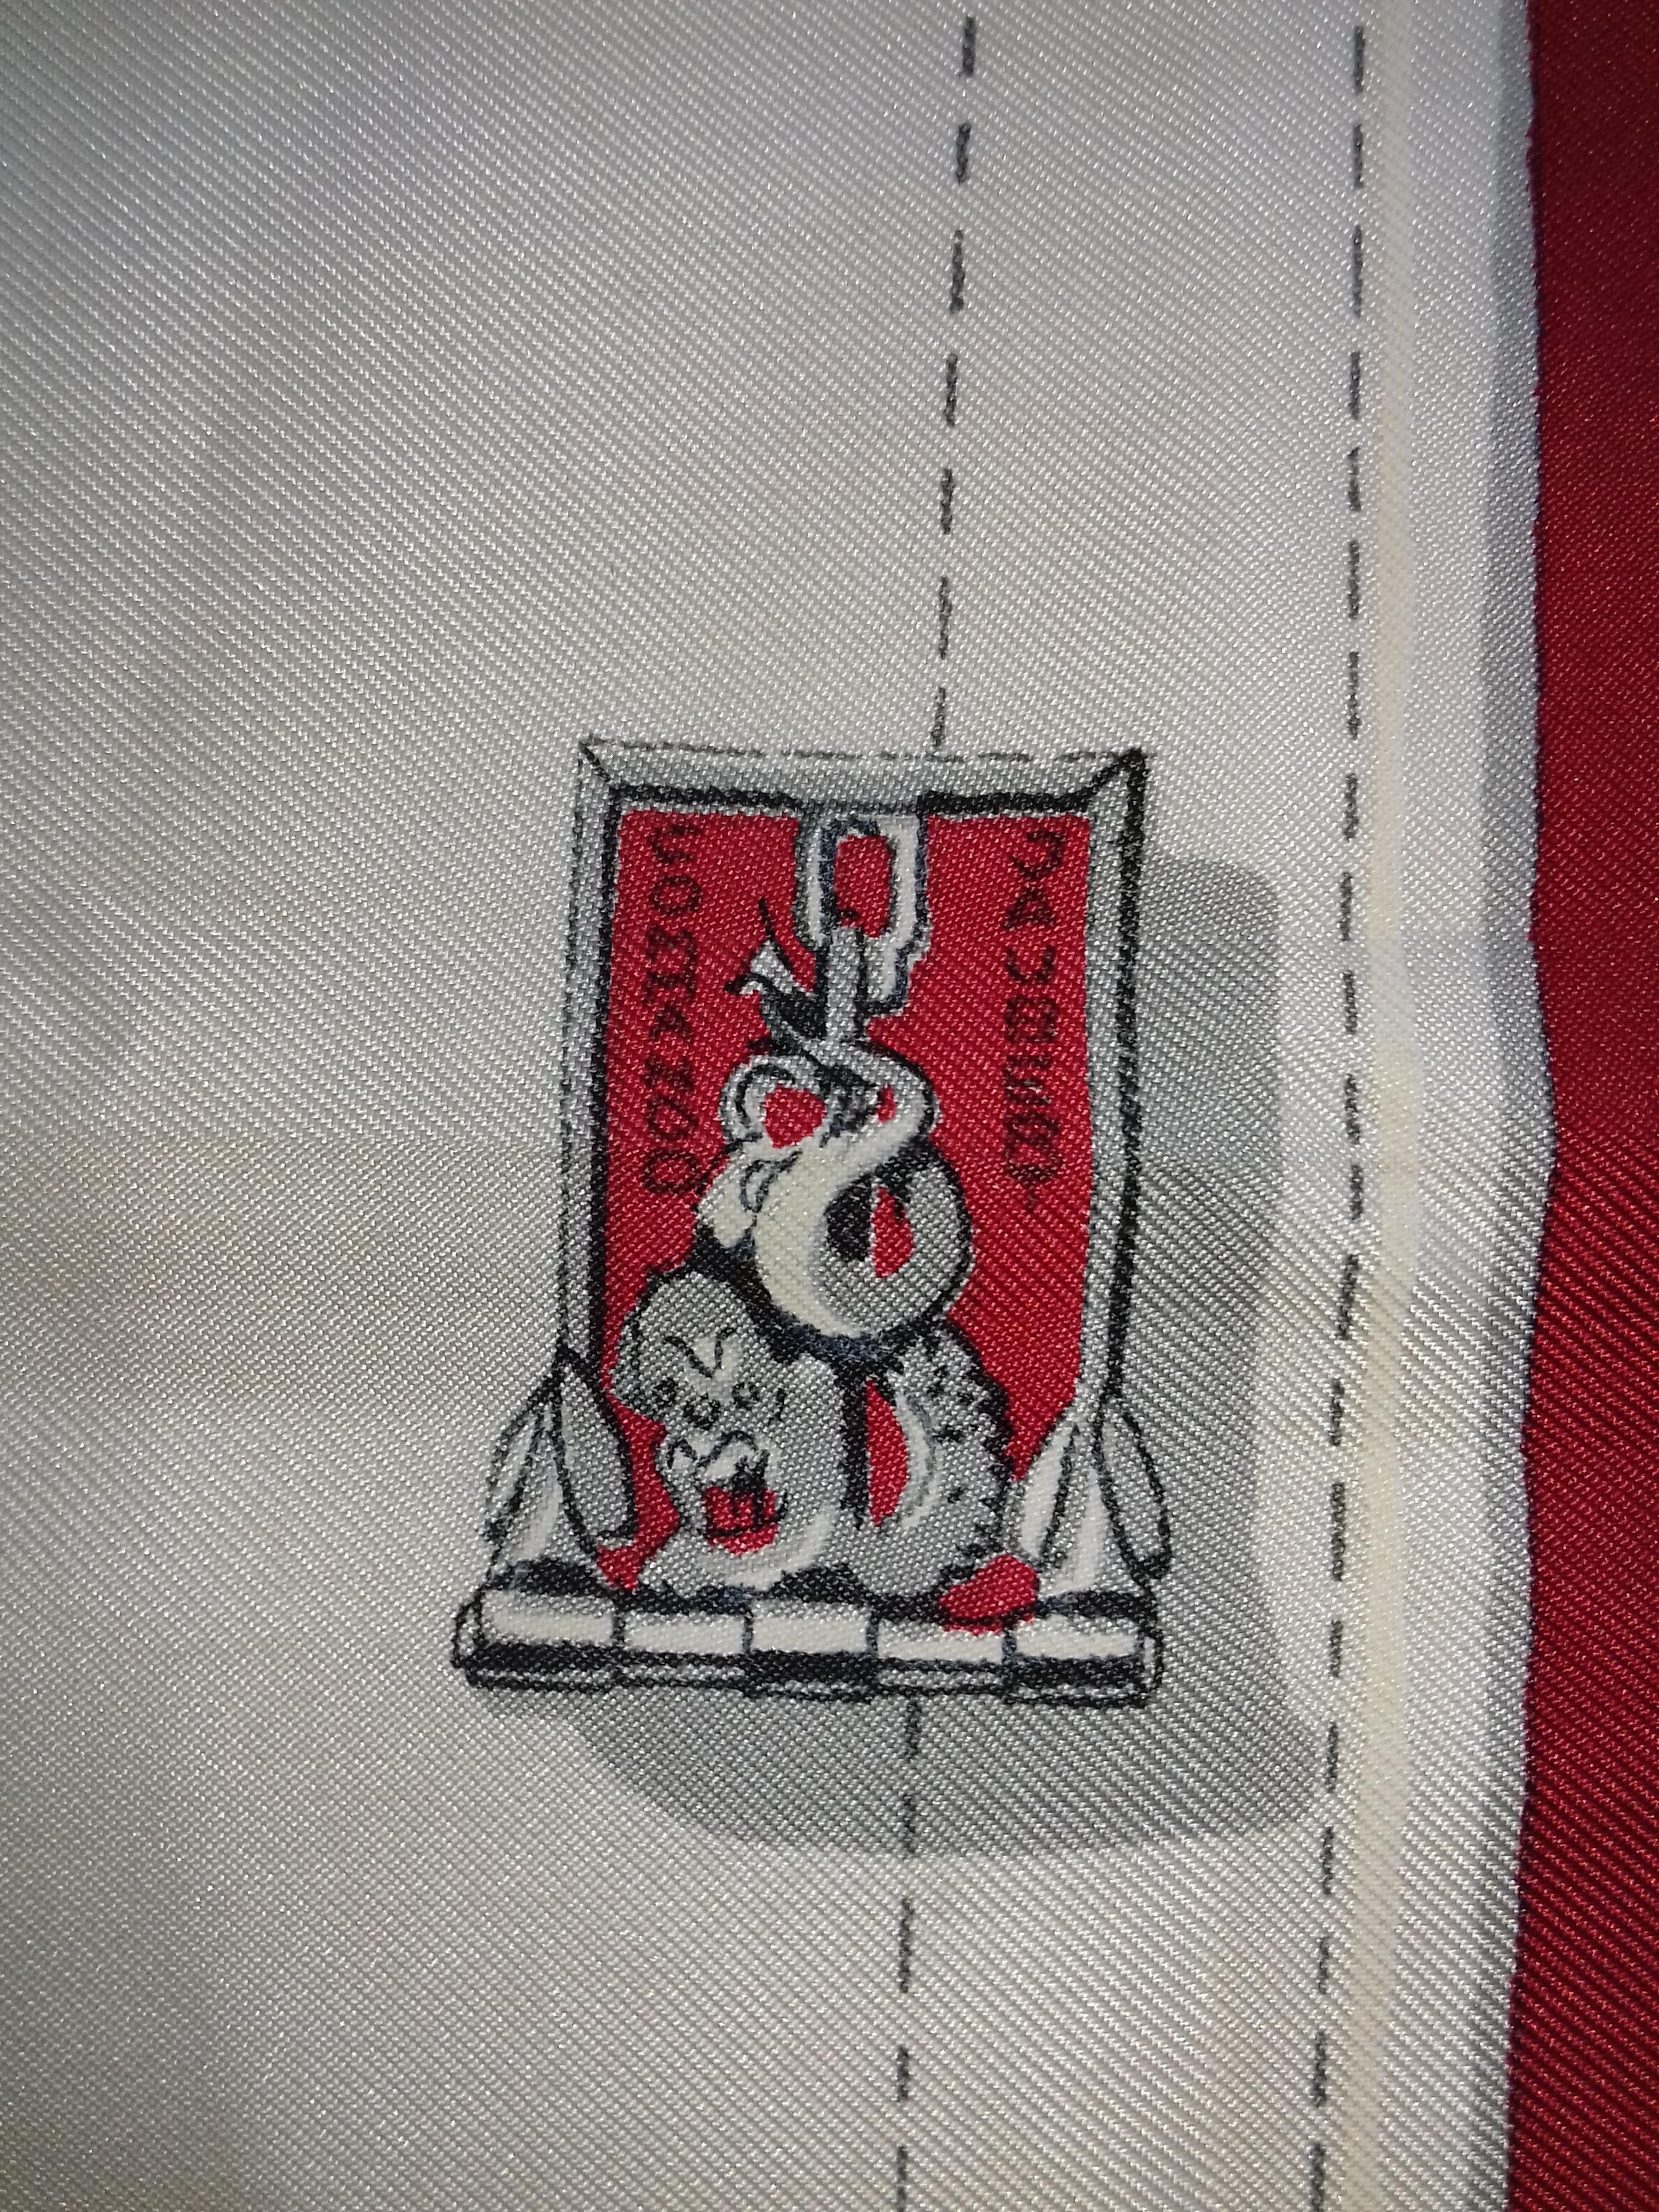 Hermès Silk Scarf Vintage Demi Brigade de Fusiliers Marins Grygkar 1958 Rate 1B 7